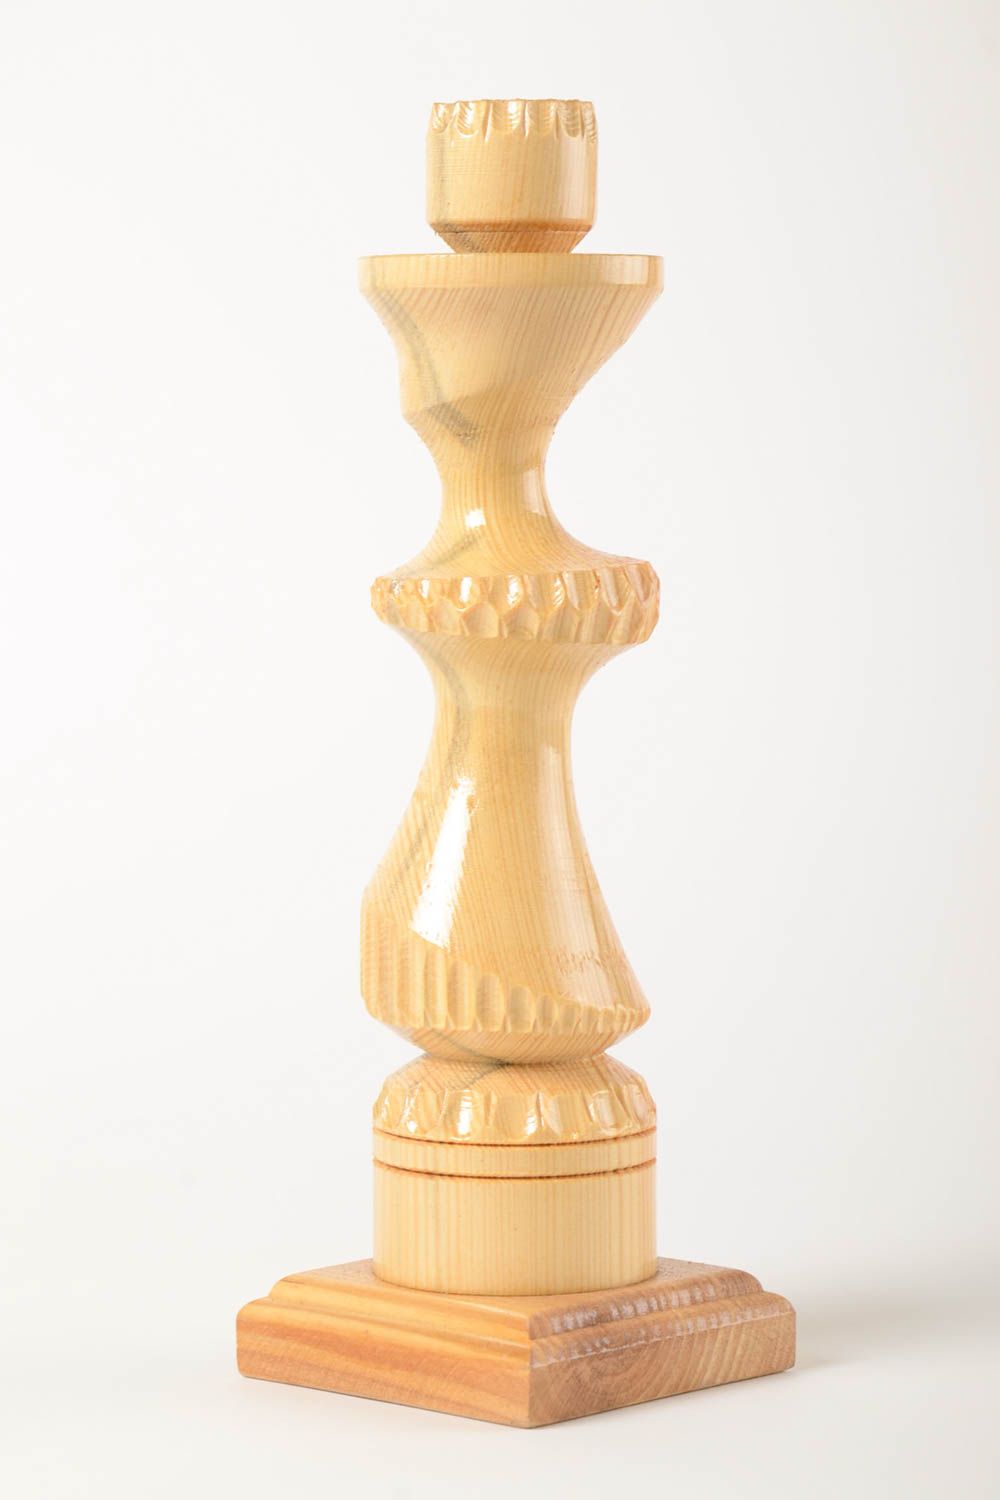 Handmade Deko Kerzenständer schöner Kerzenhalter Holz Dekoration Geschenk Idee foto 2